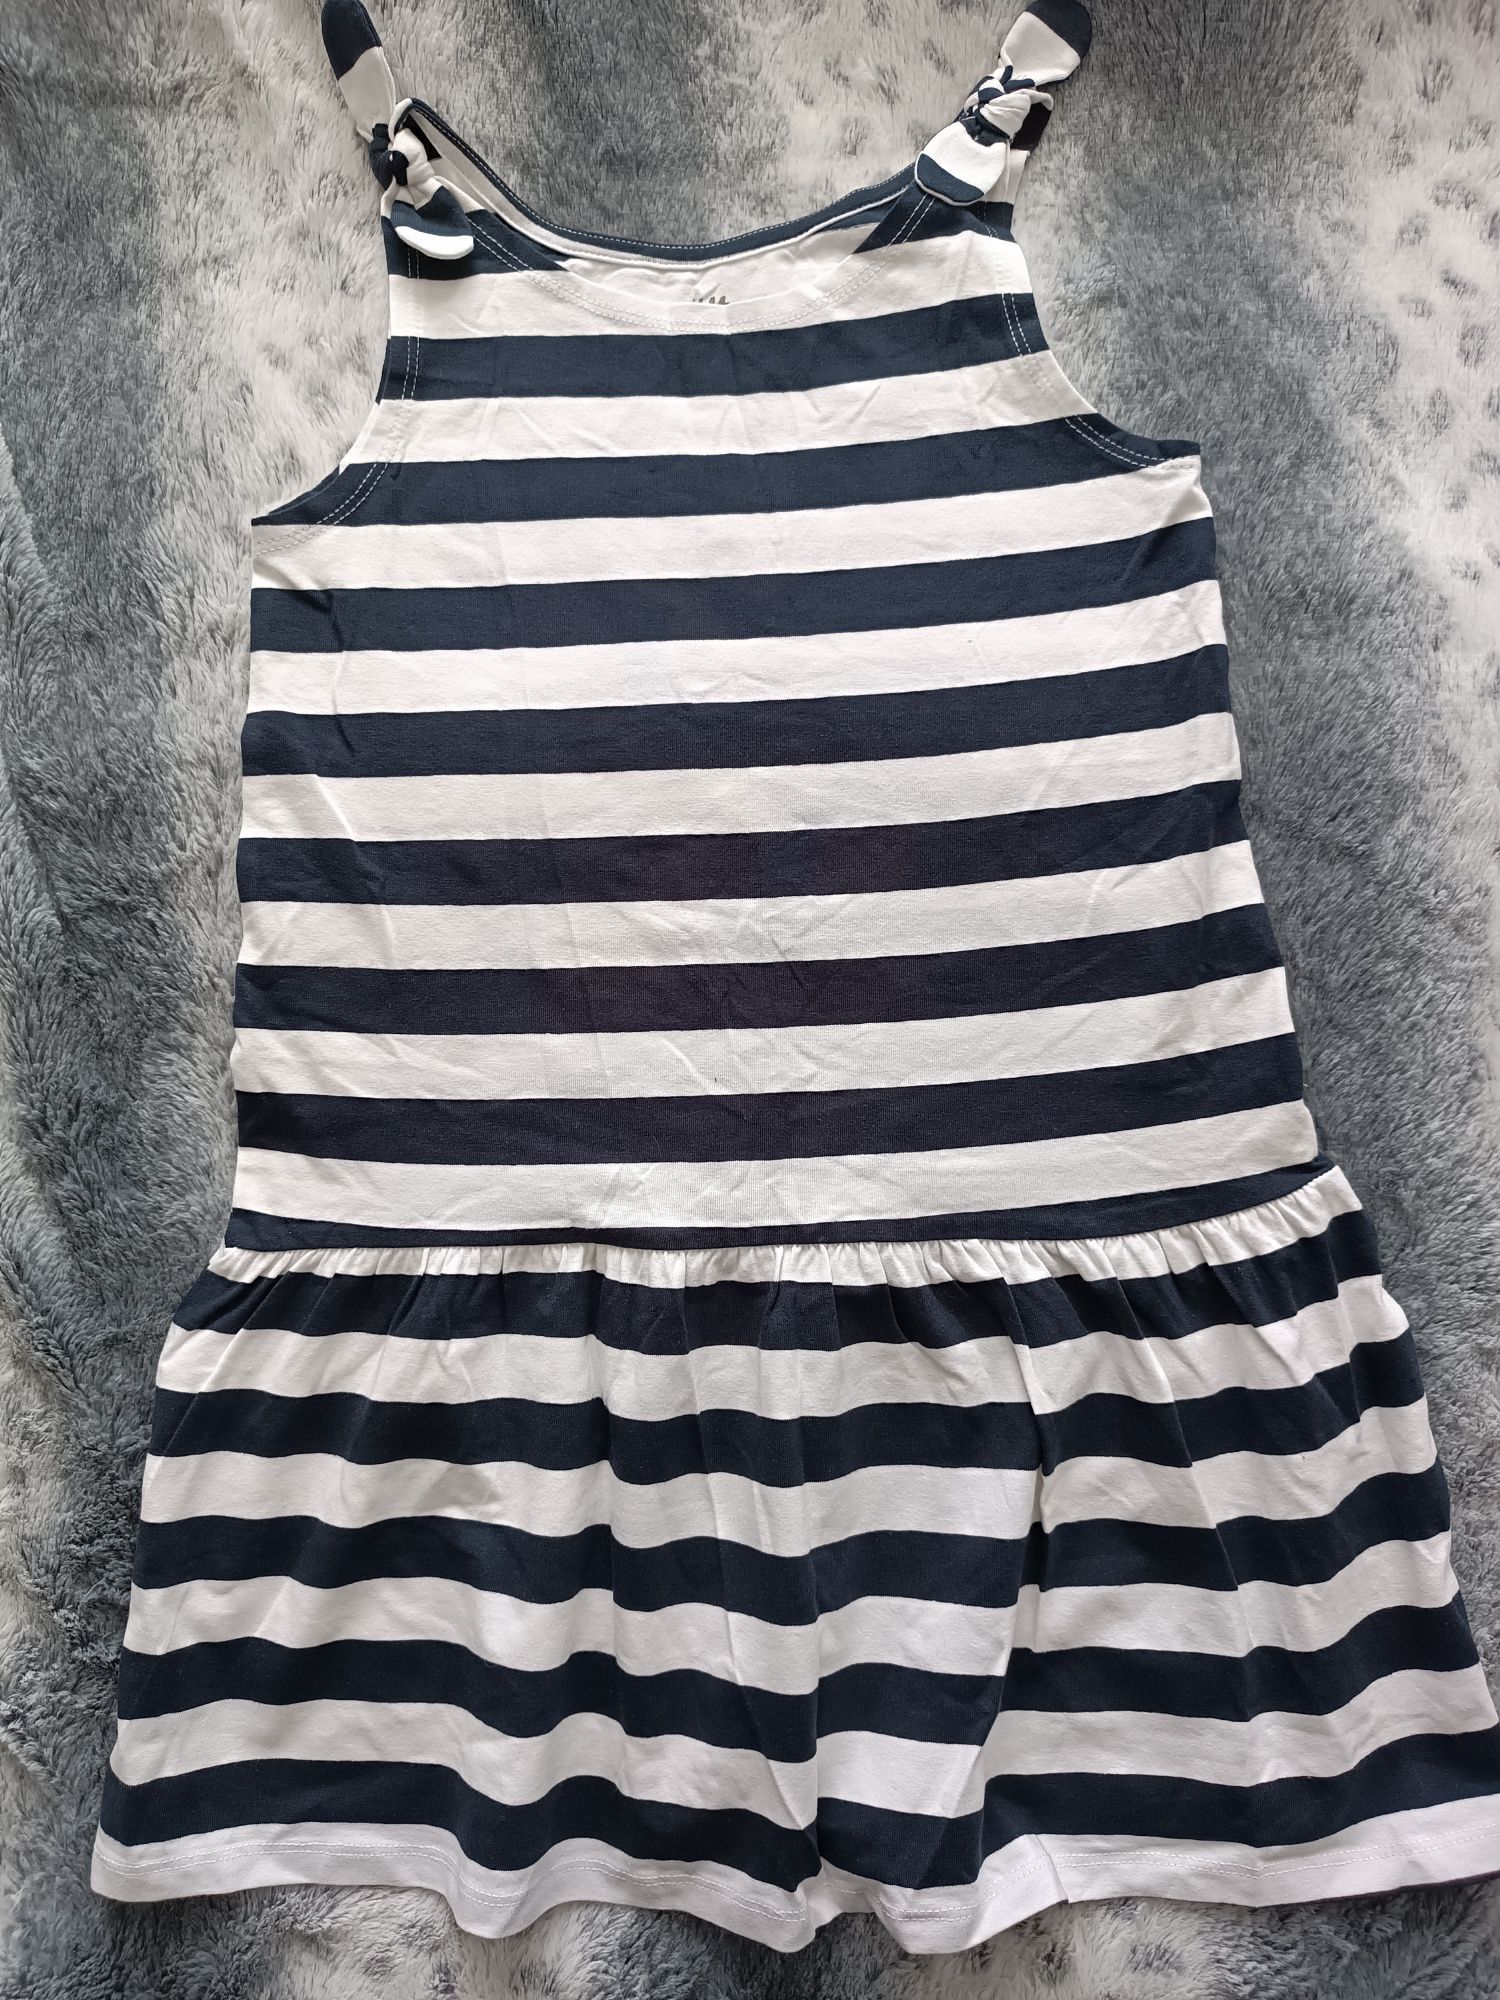 Сукня H&M на дівчинку, вік 6-8років